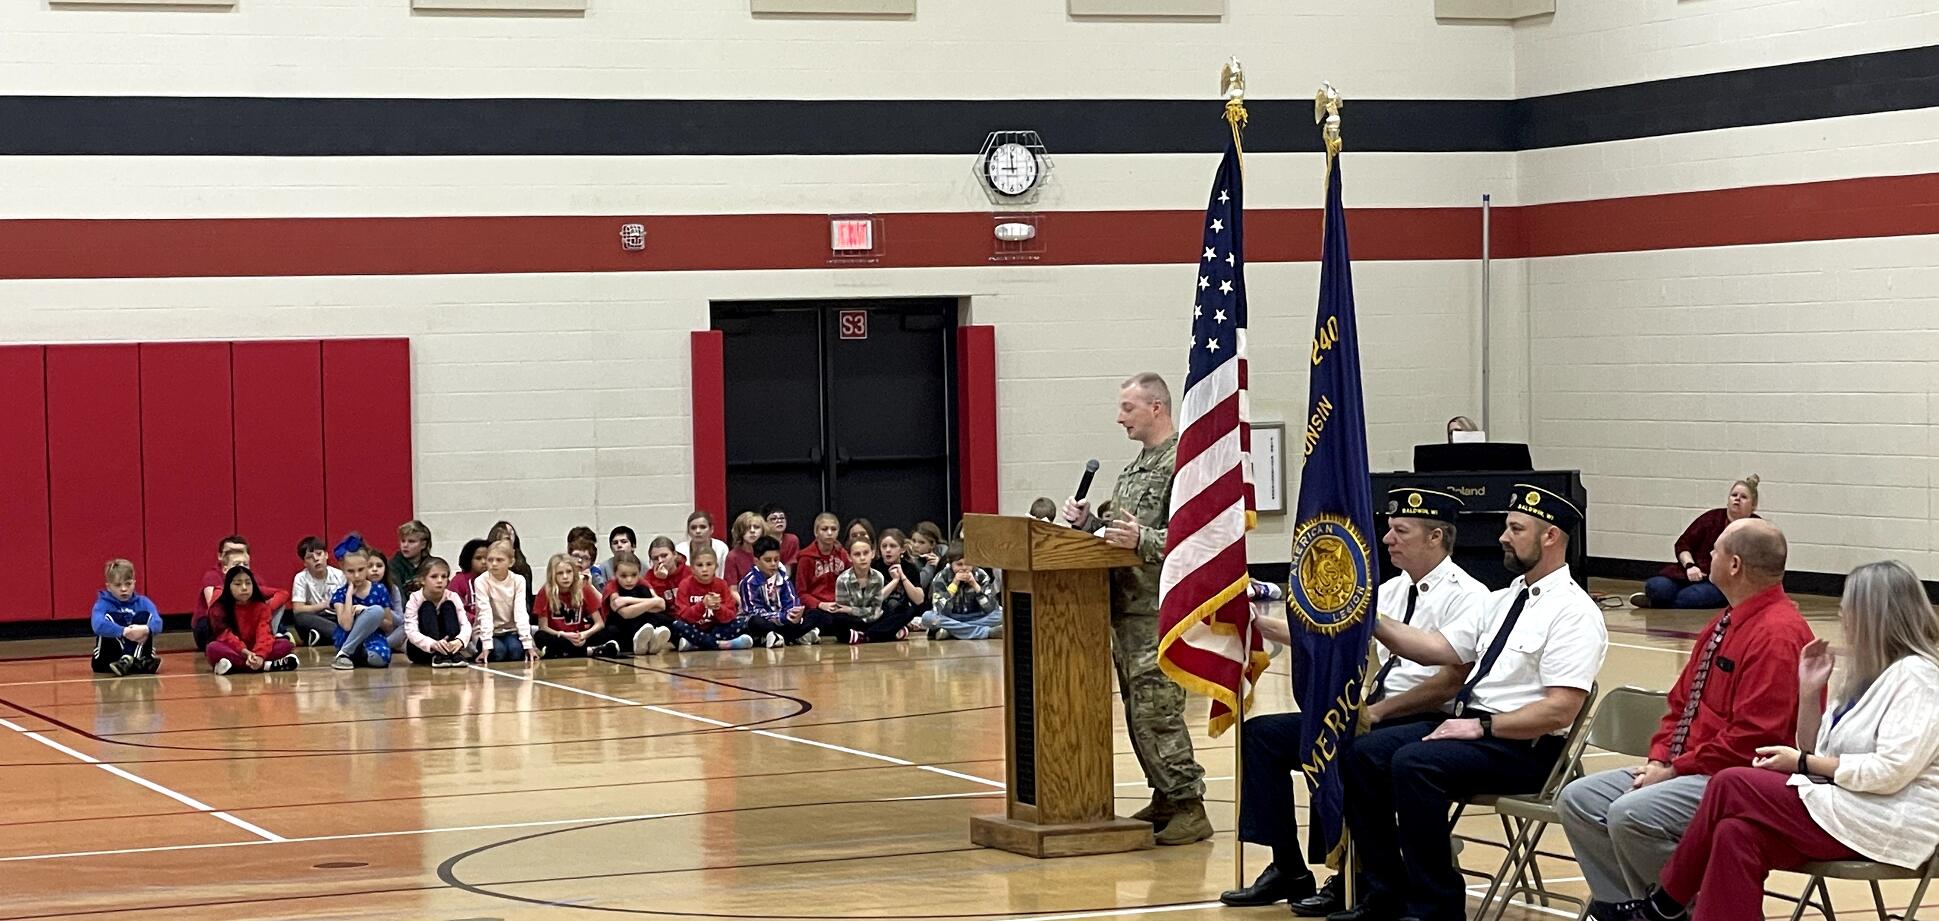 Veterans presenting flag to elementary children.